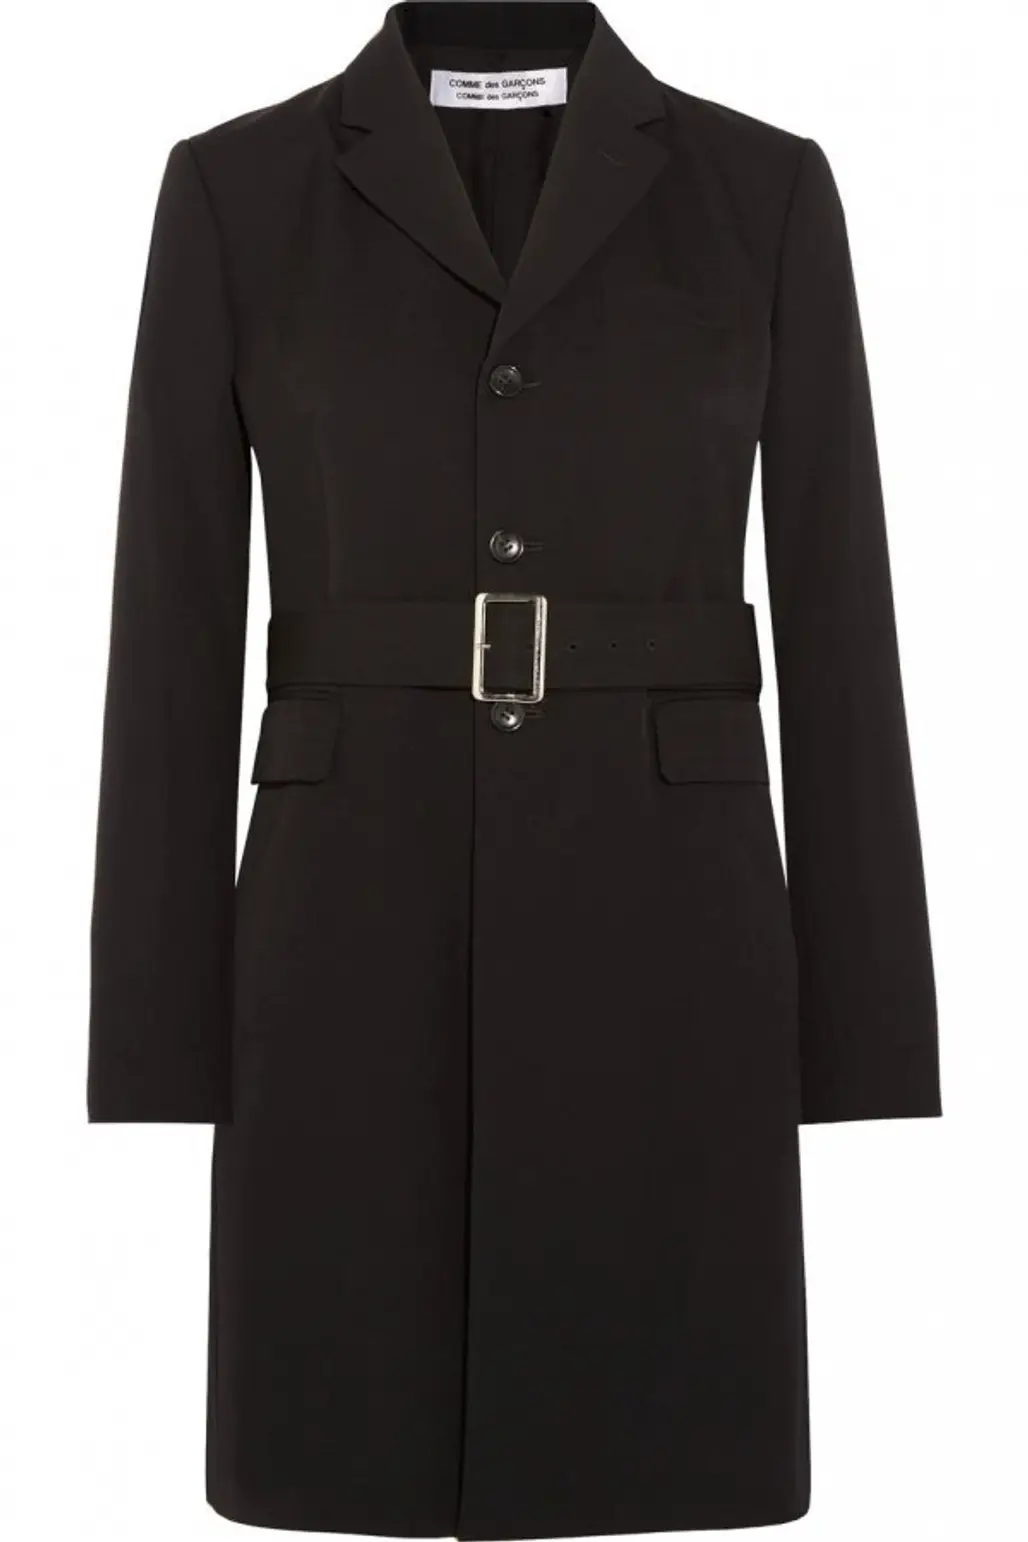 coat, black, overcoat, trench coat, formal wear,